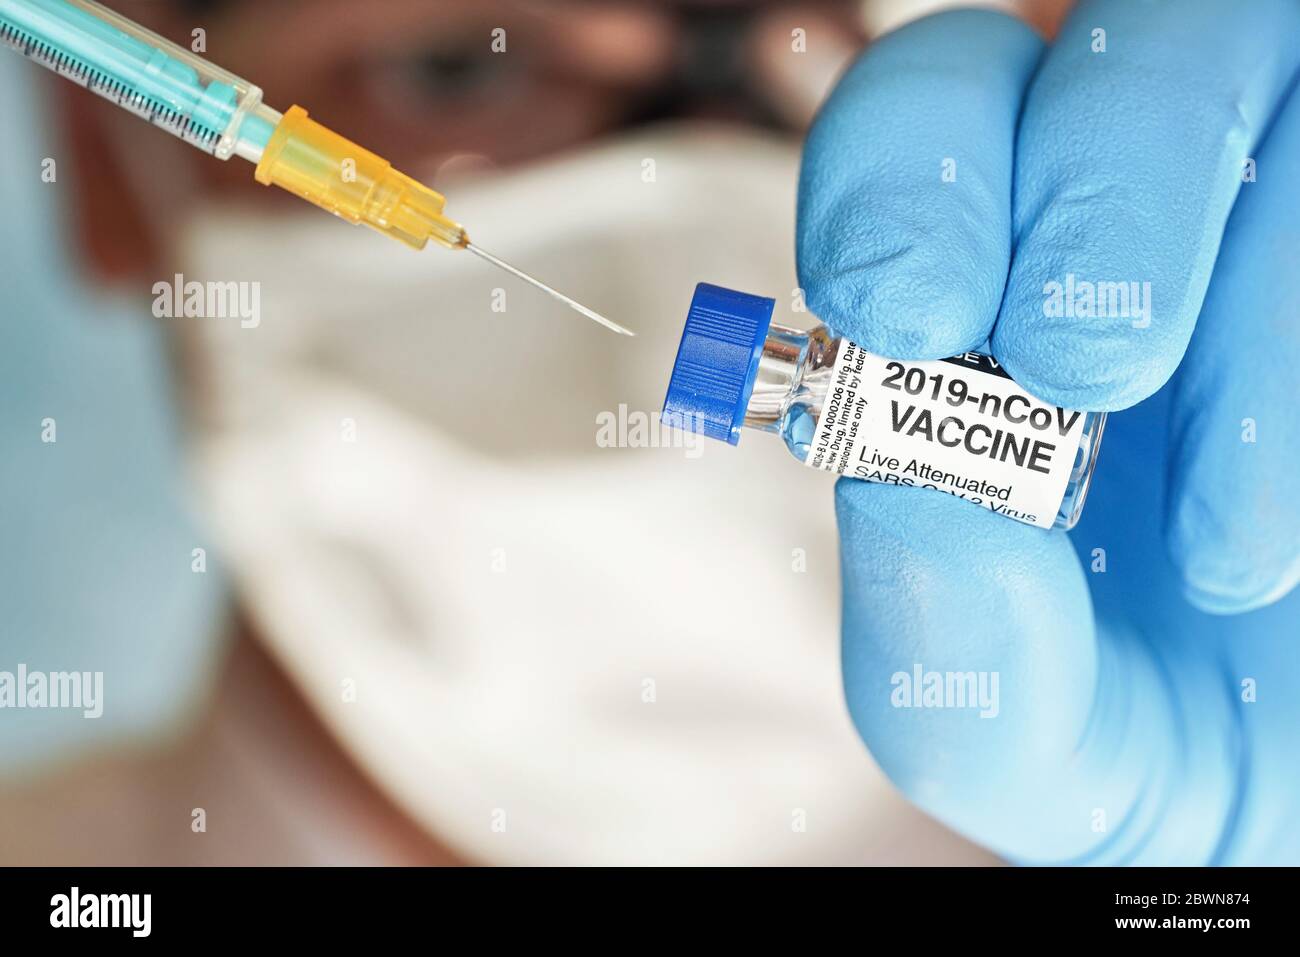 Hombre mano en guante azul de nitrilo mantener un pequeño vial con la vacuna contra el coronavirus, para inyectarlo con jeringa verde naranja, cara borrosa máscara blanca del virus en la espalda Foto de stock